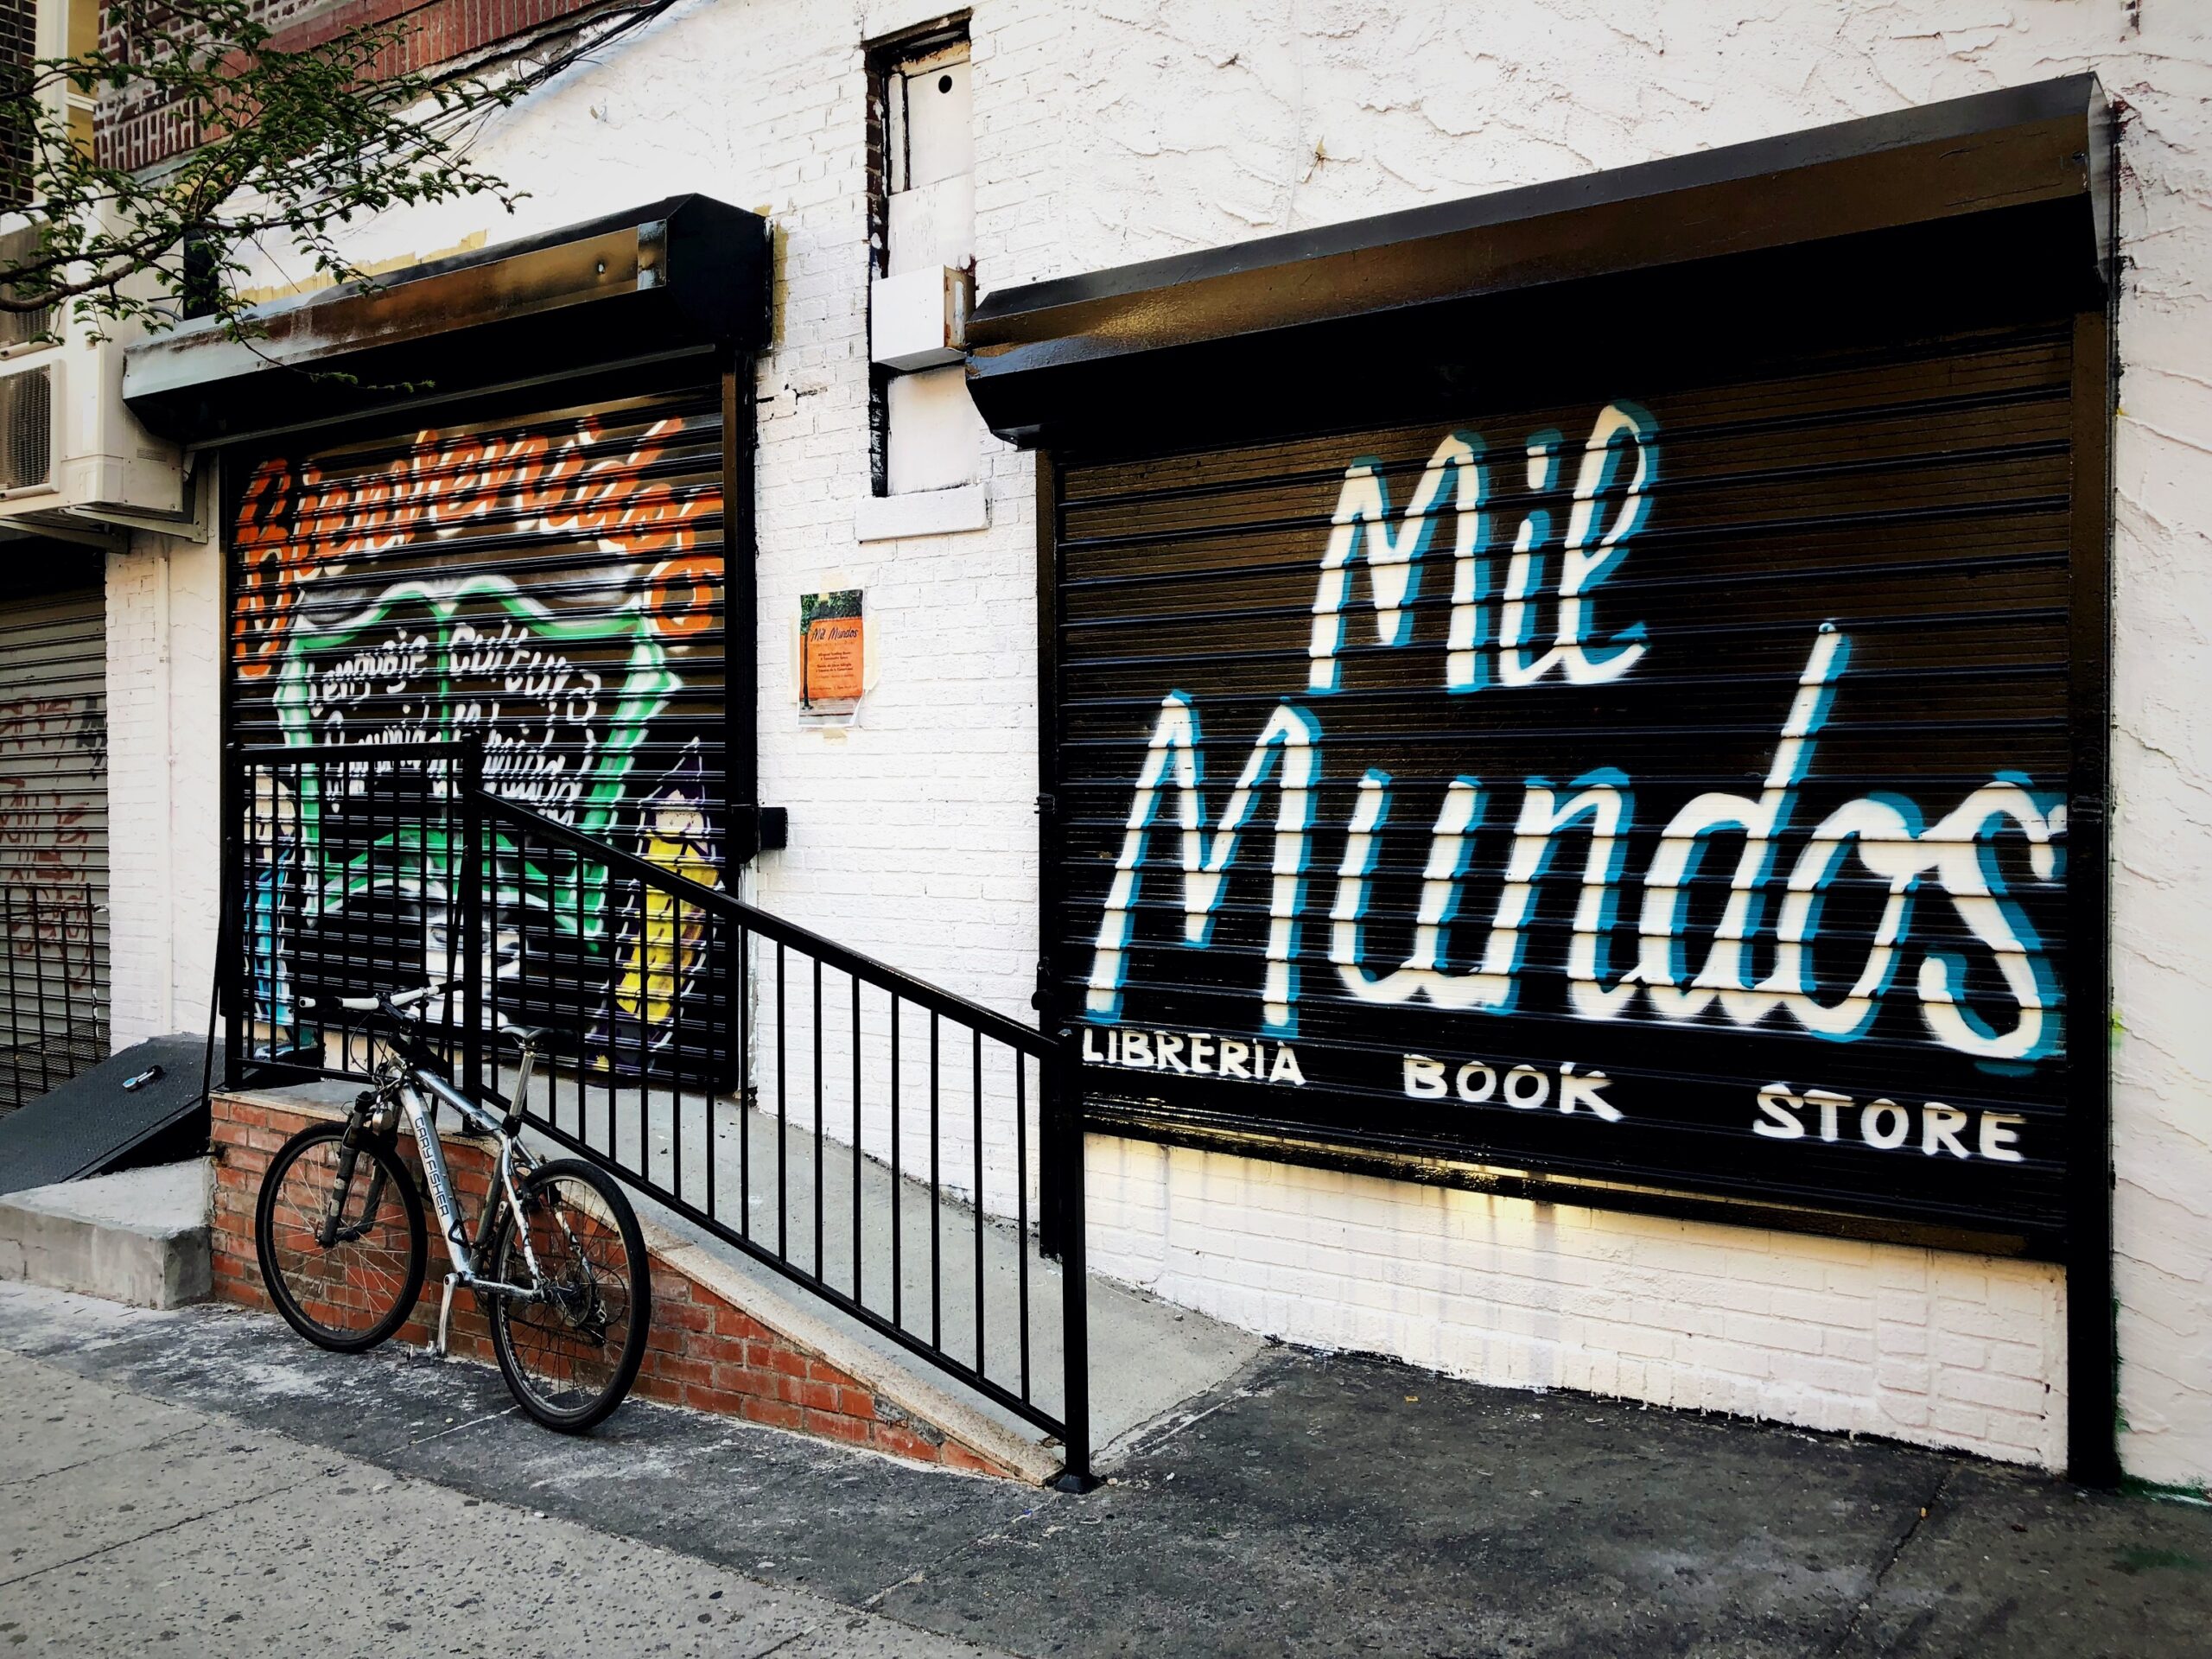 How one bilingual bookstore bridges culture and community in Bushwick